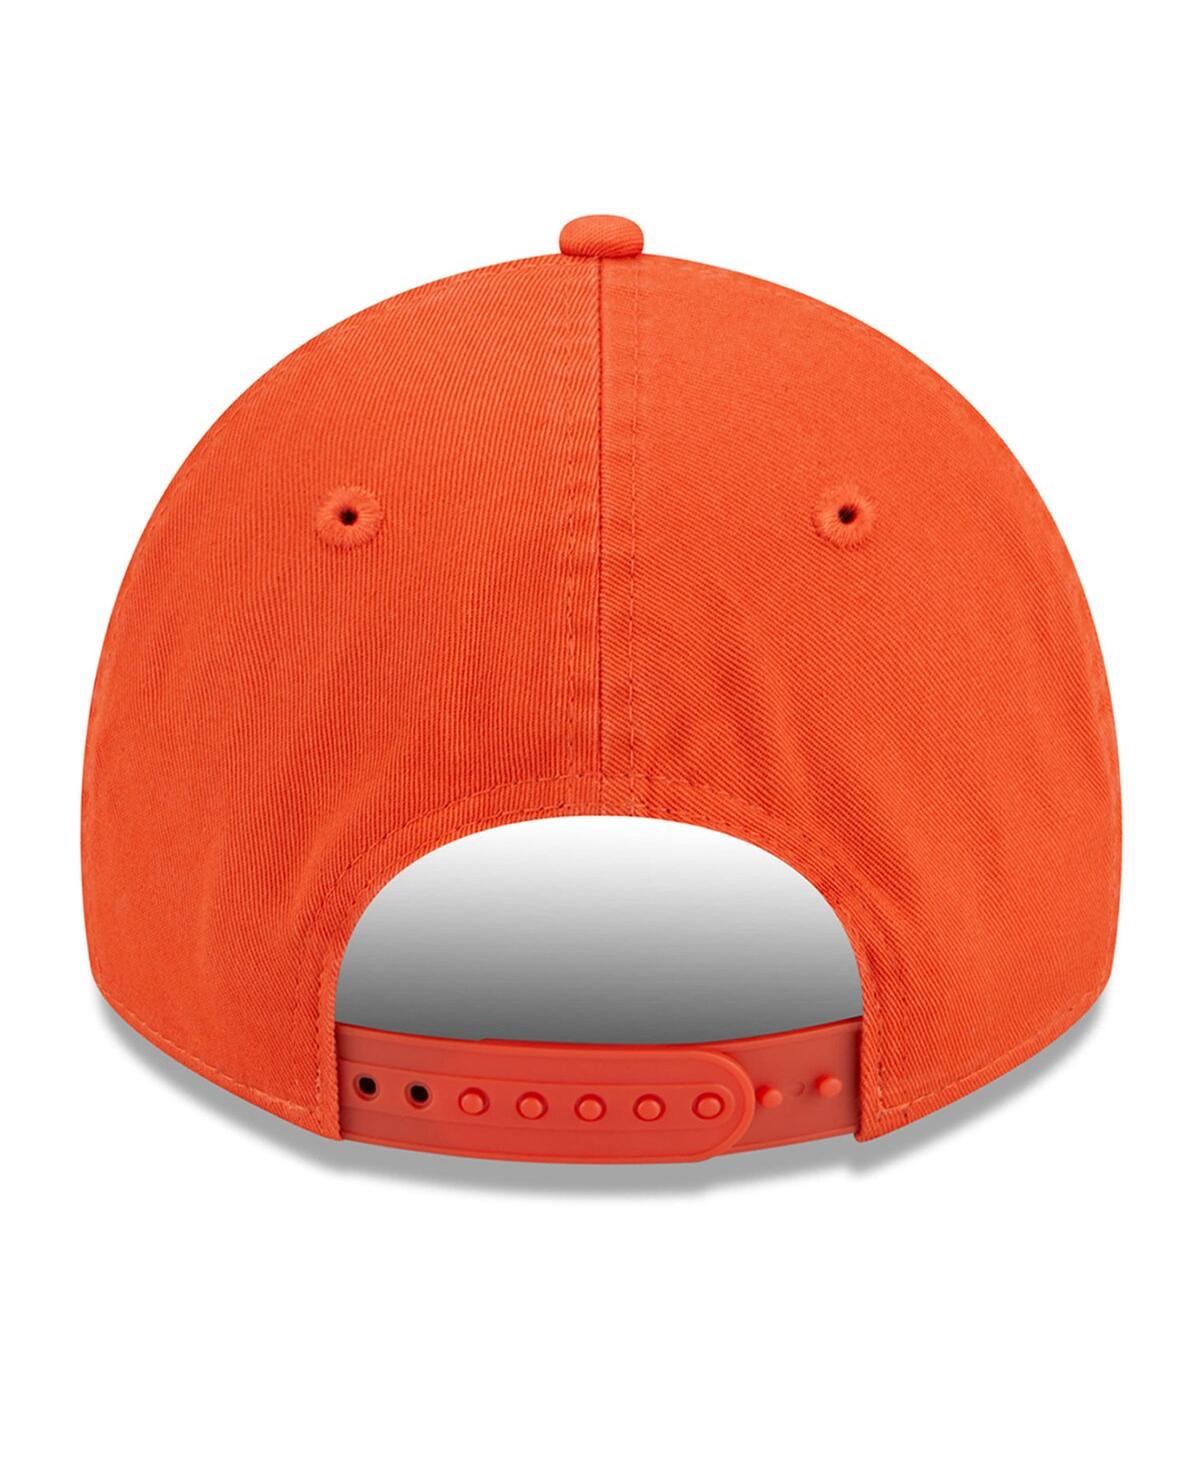 Shop New Era Women's  Orange Clemson Tigers Script 9twenty Adjustable Hat